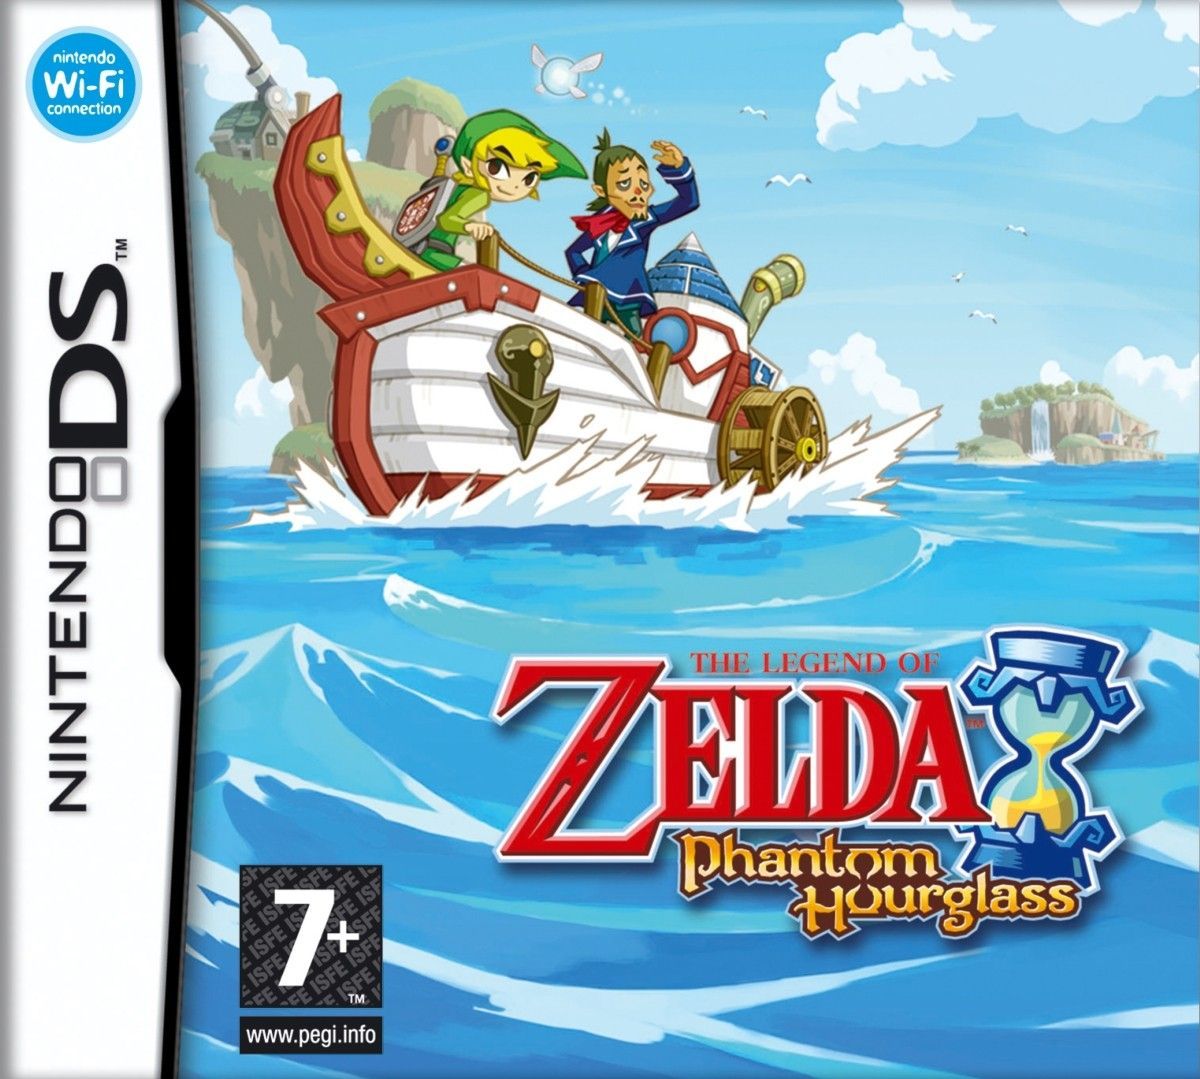 Nintendo DS Juegos: The Legend of Zelda: Phantom Hourglass